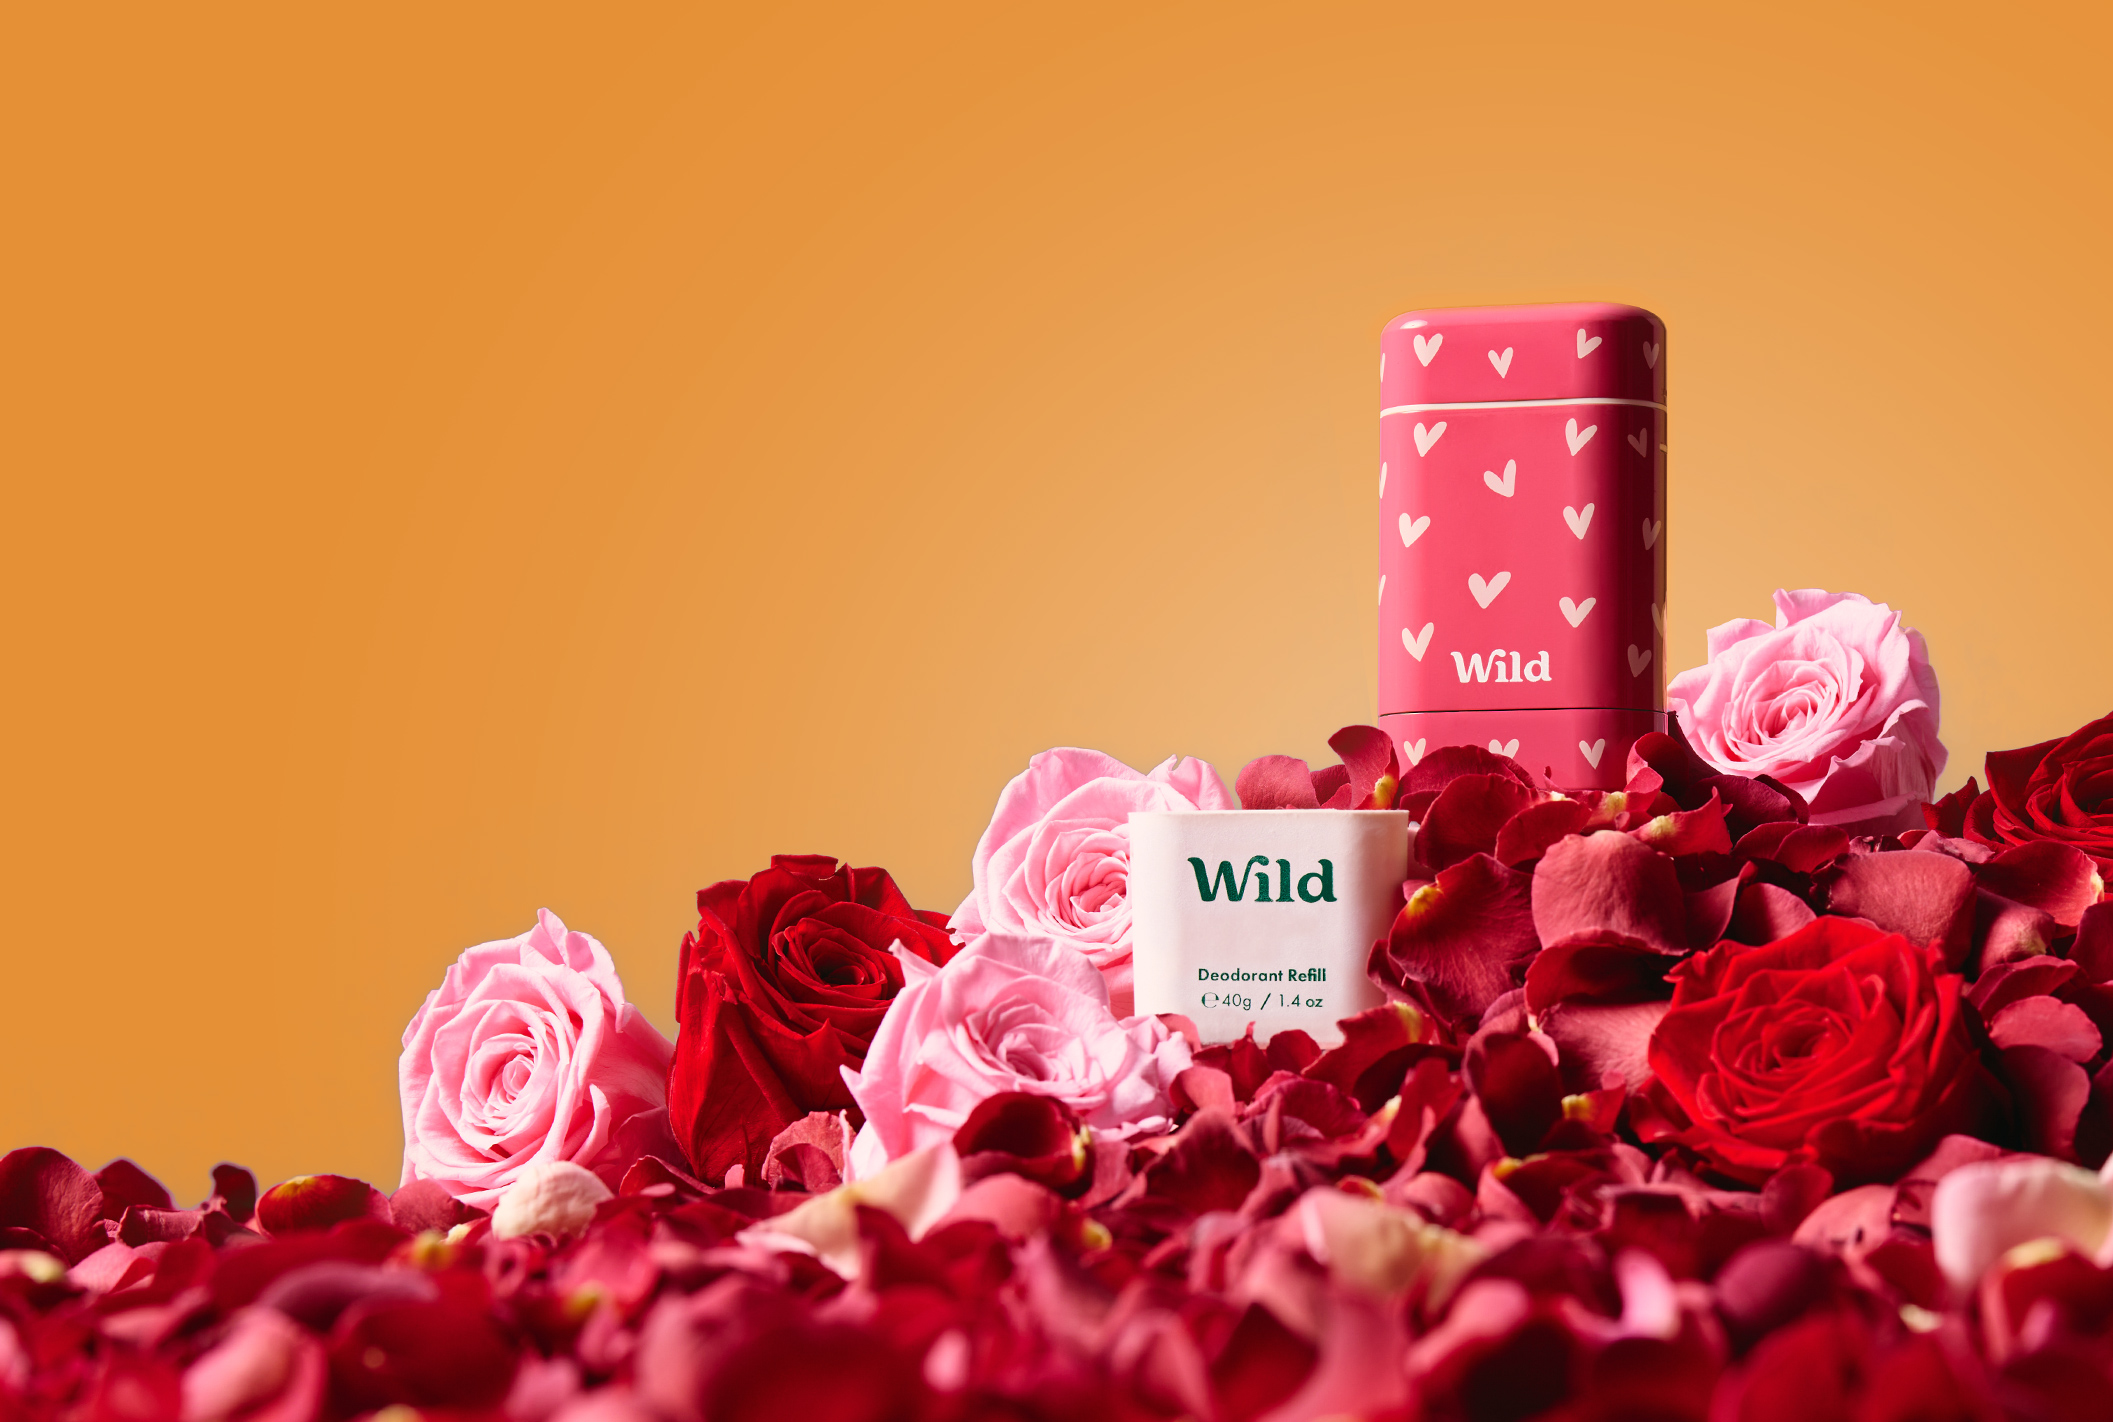 Rose Petals Starterset - Wild DE